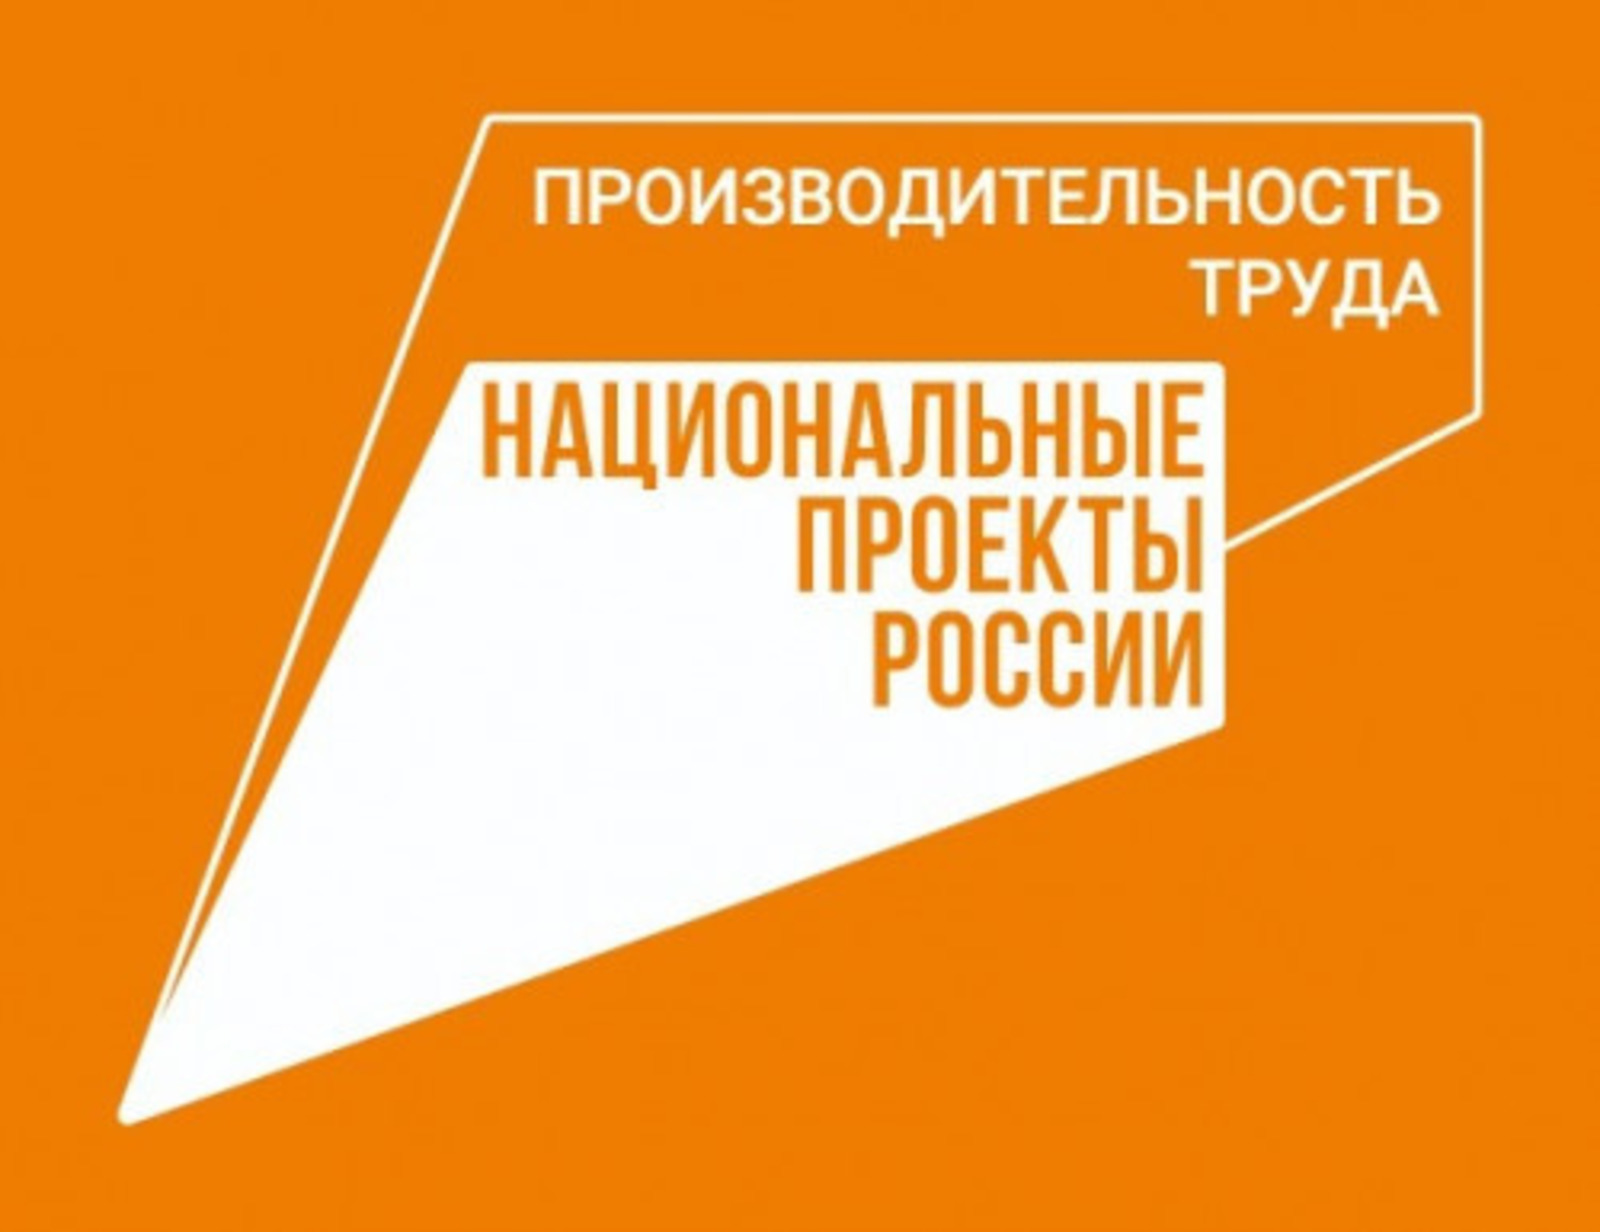 В Башкирии экономический эффект от нацпроекта «Производительность труда» превысил 1,5 млрд рублей